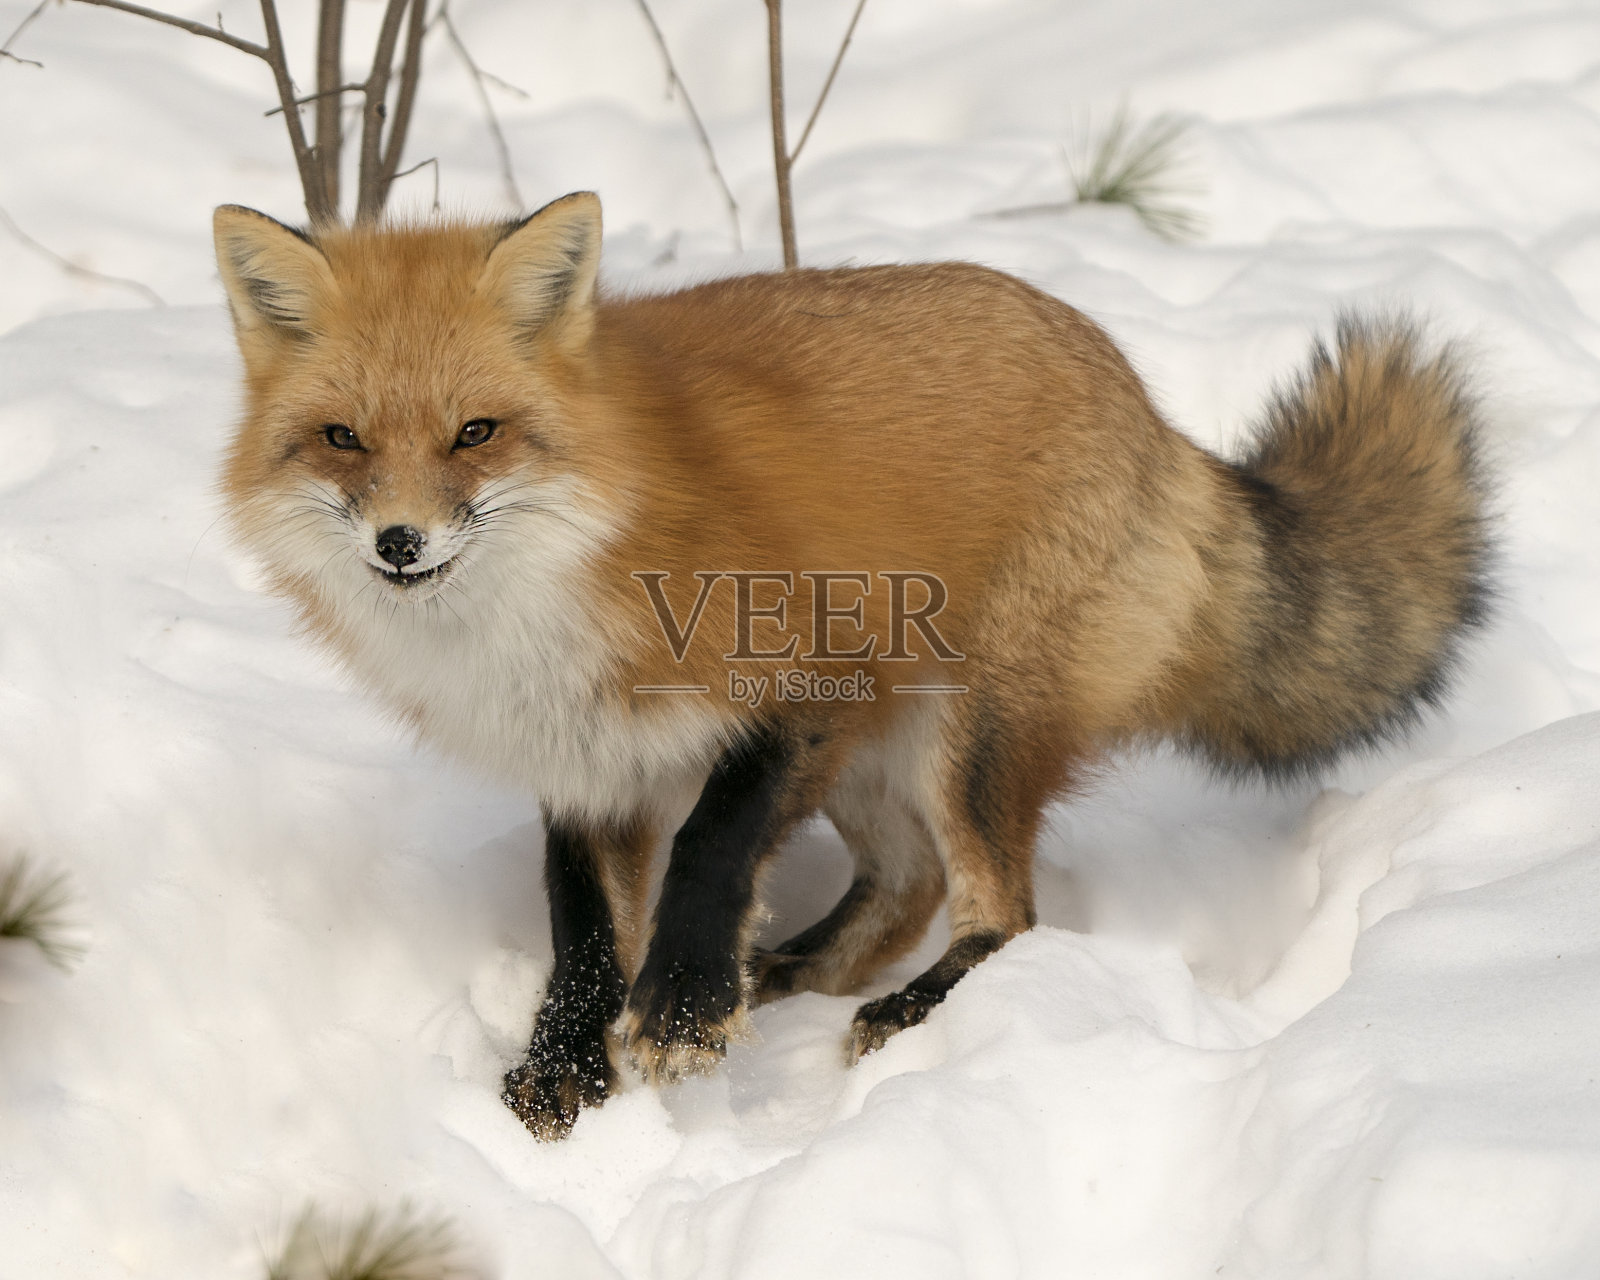 红狐特写特写在冬季以其所处的环境和栖息地为背景，显示出毛茸茸的狐狸尾巴、皮毛。狐狸的形象。图片。肖像。狐狸库存图片。照片摄影图片